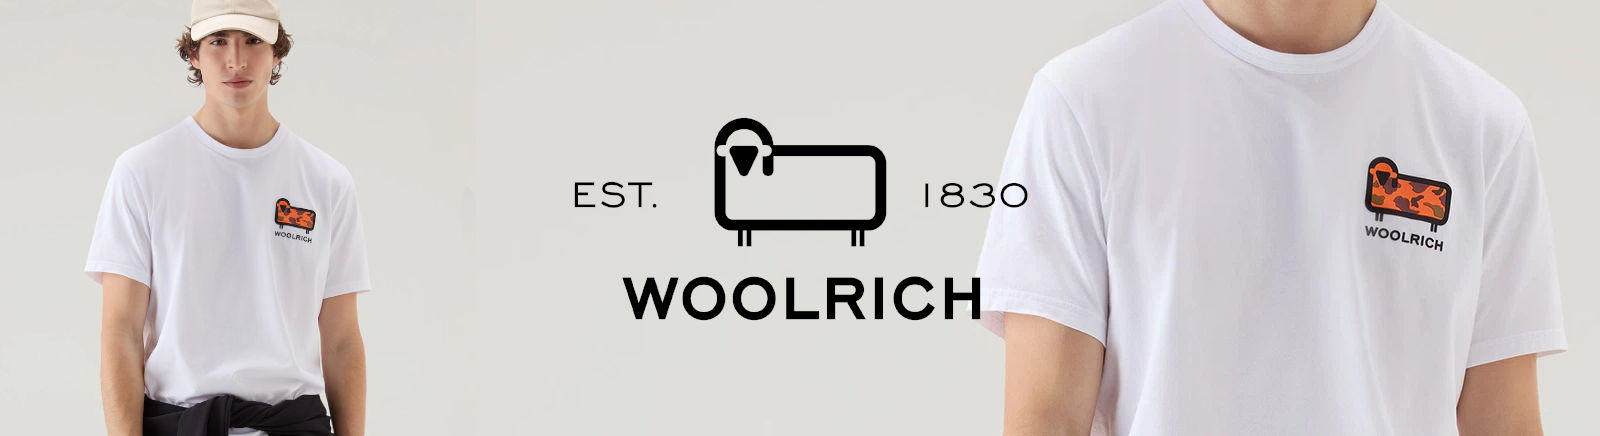 Woolrich Damenschuhe online shoppen im Prange Schuhe Shop